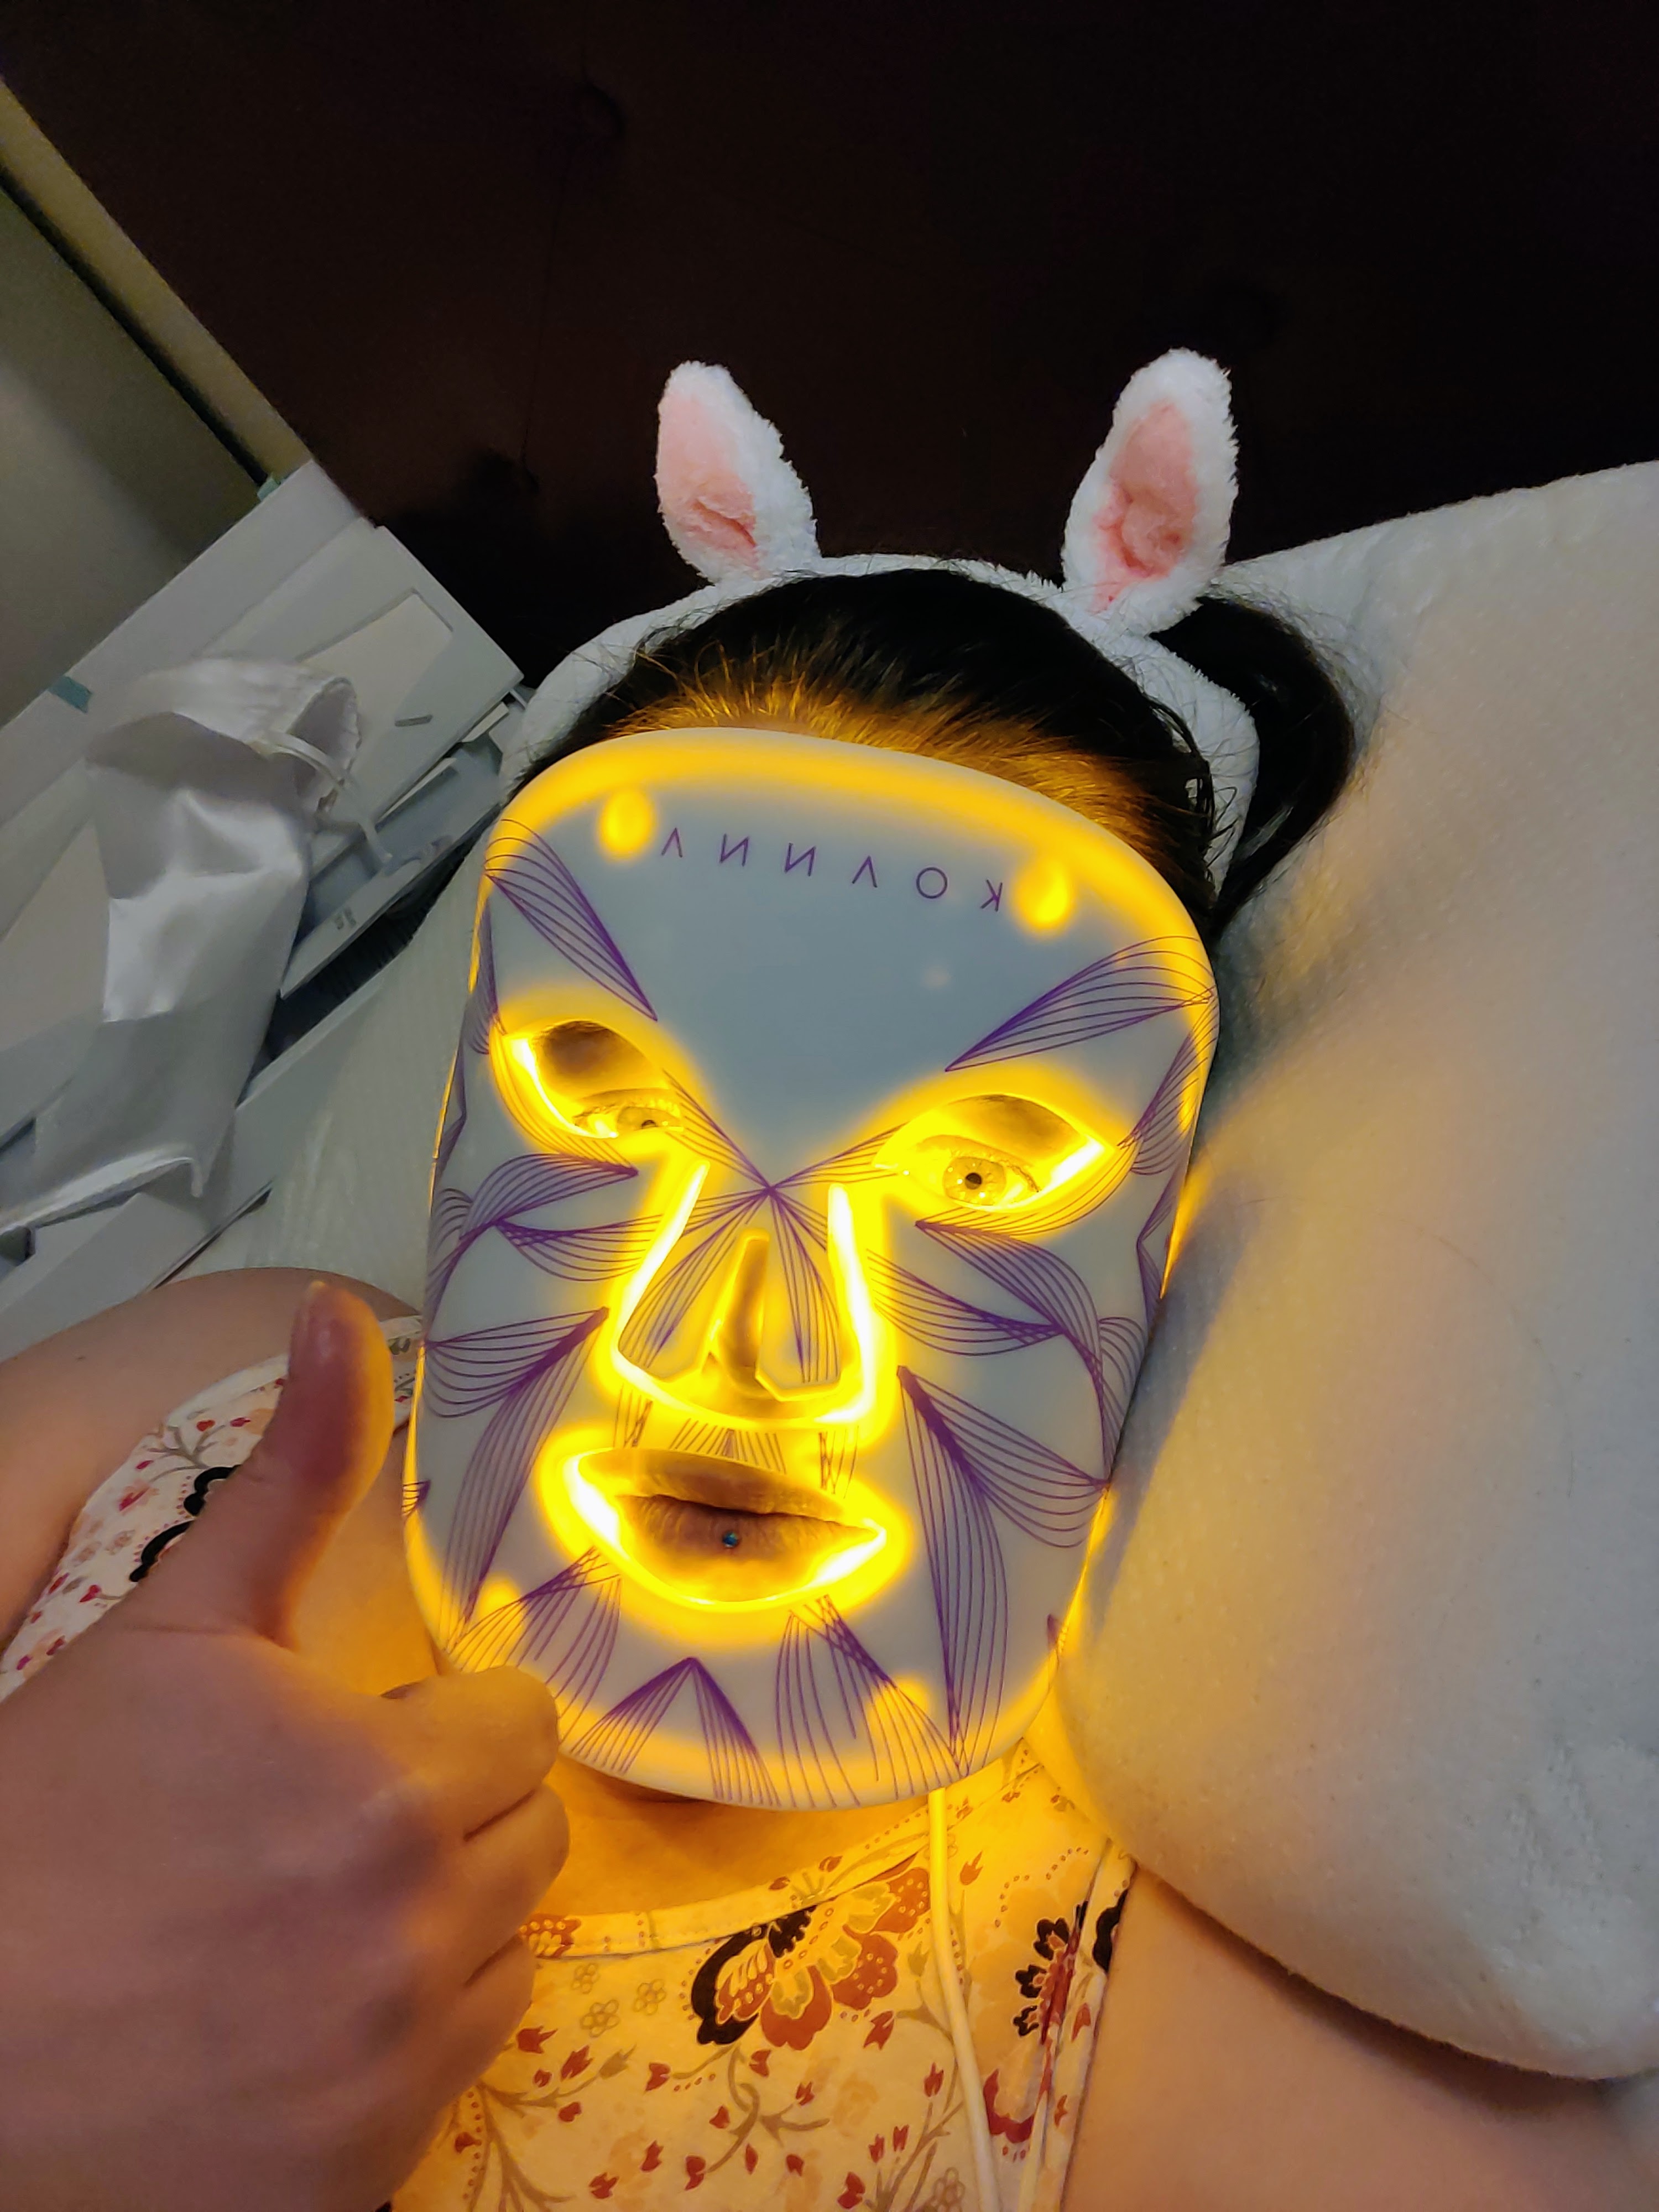 LED Lichttherapie-Maske von Koanna - Benutzung Bild 3